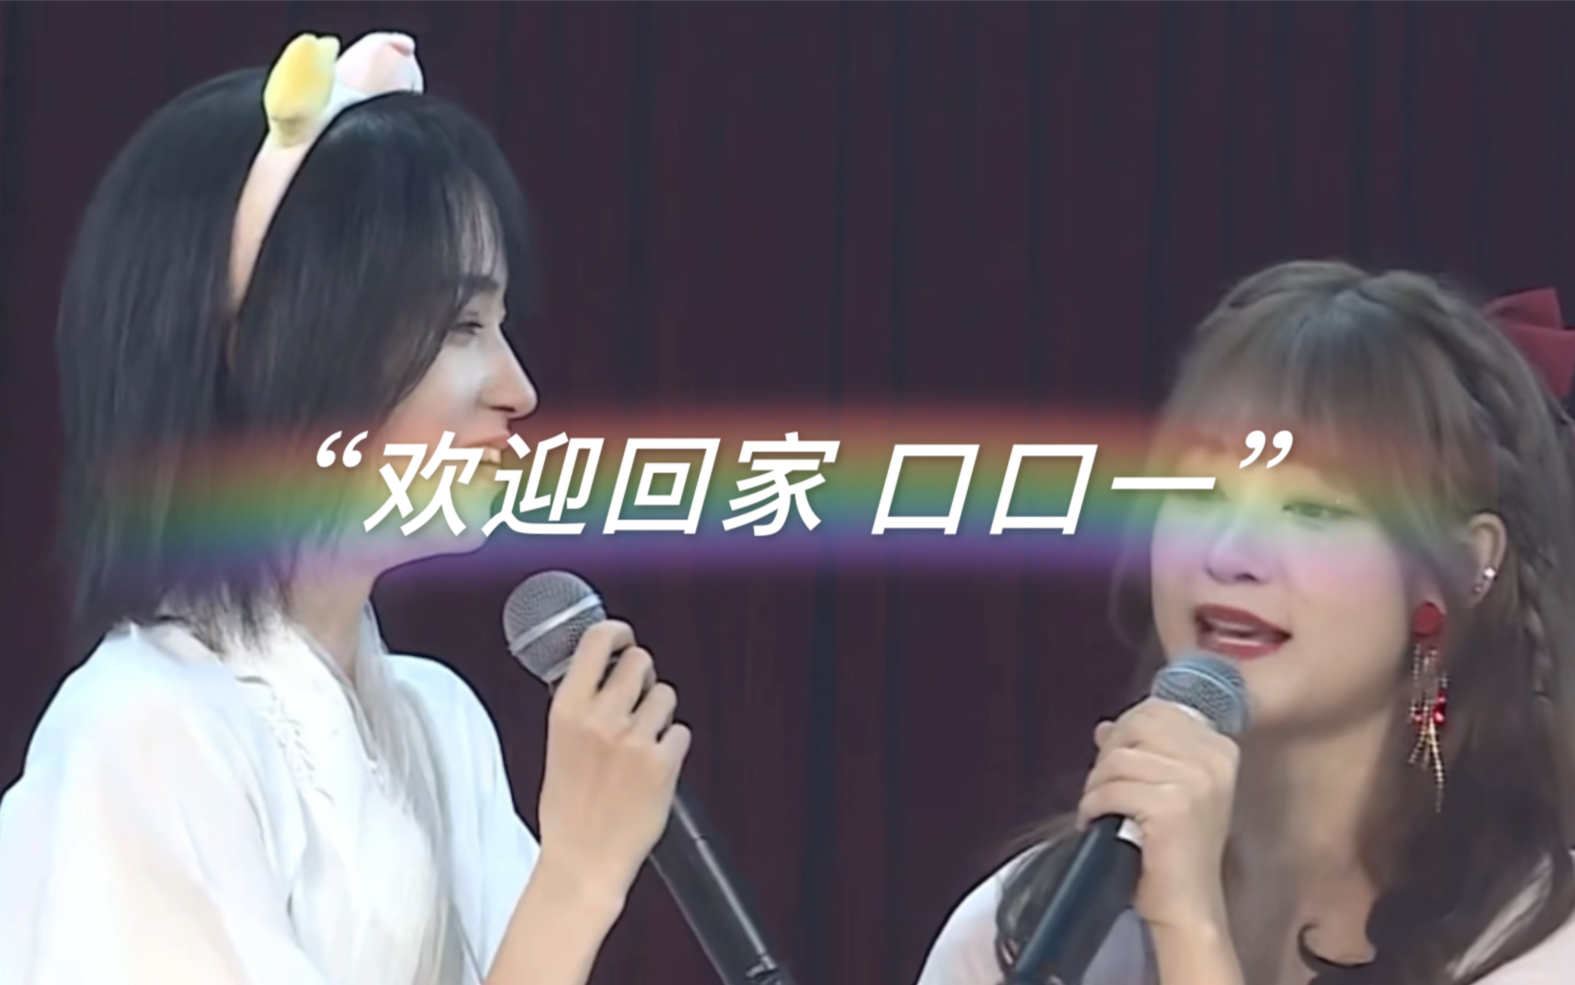 【SNH48】“如果没有当年的组阁 她口中的应该是芸姐而不是蒋芸前辈吧 总之 欢迎回家”